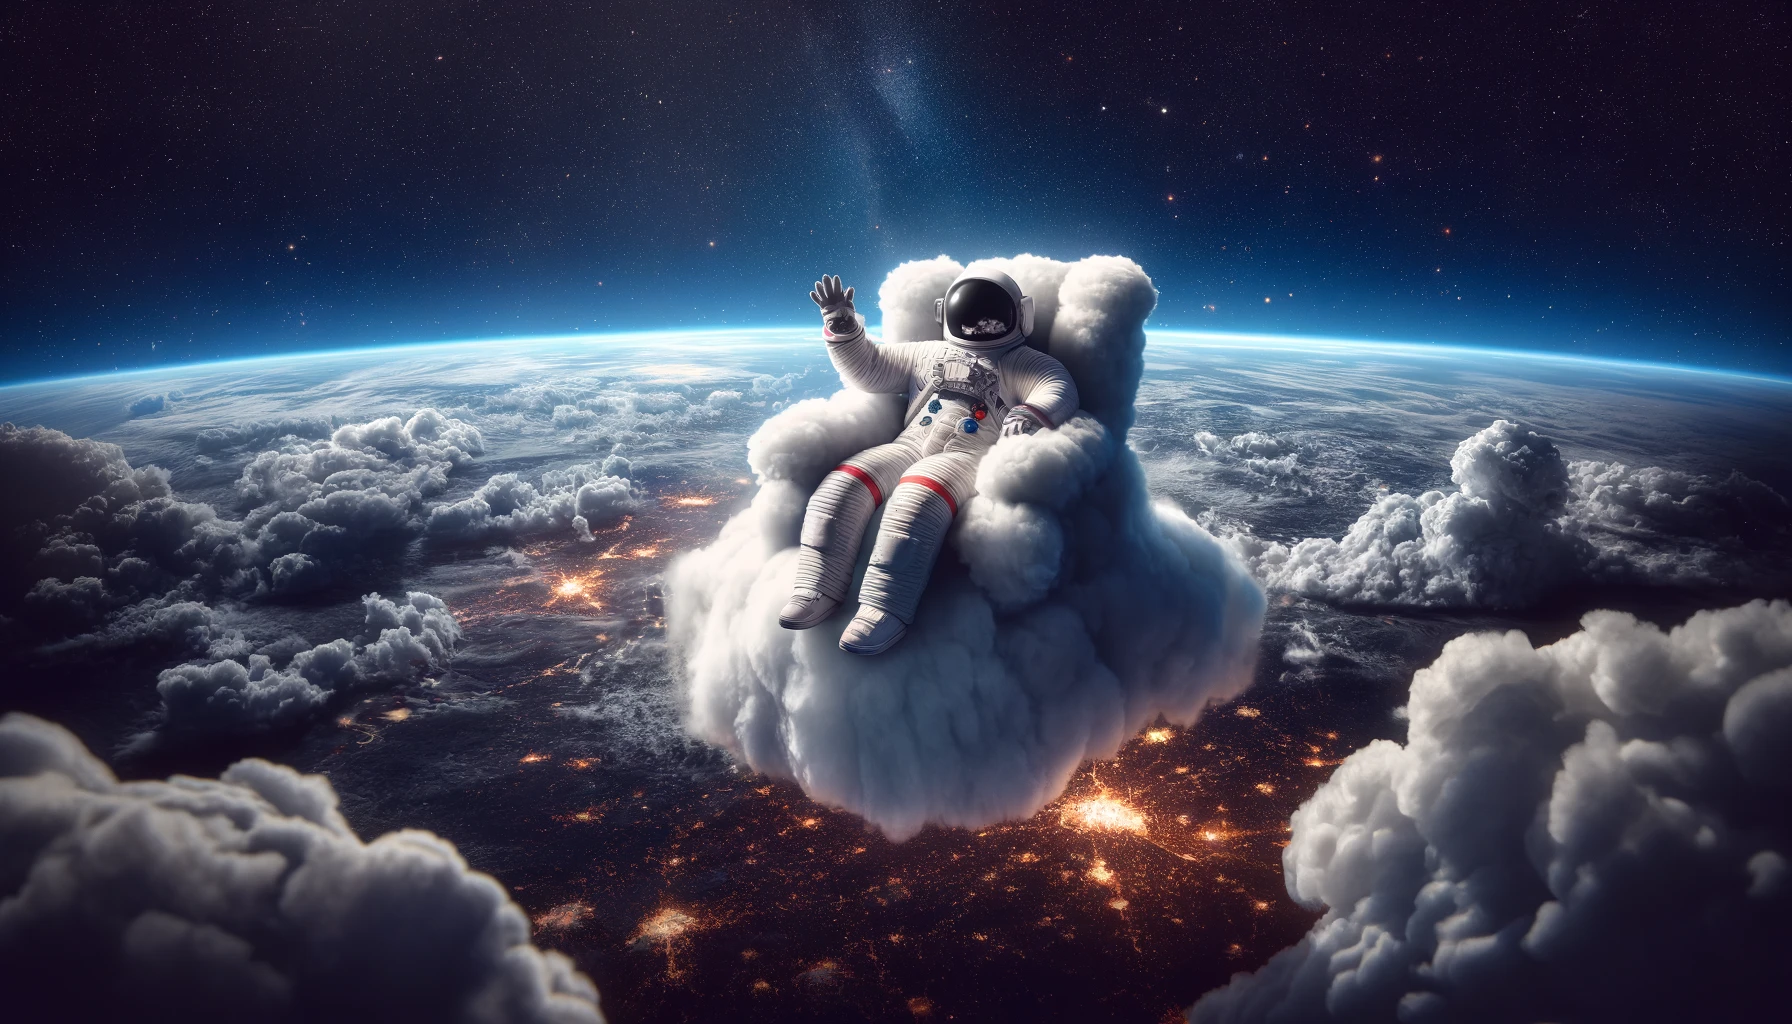 Cloud astronaut